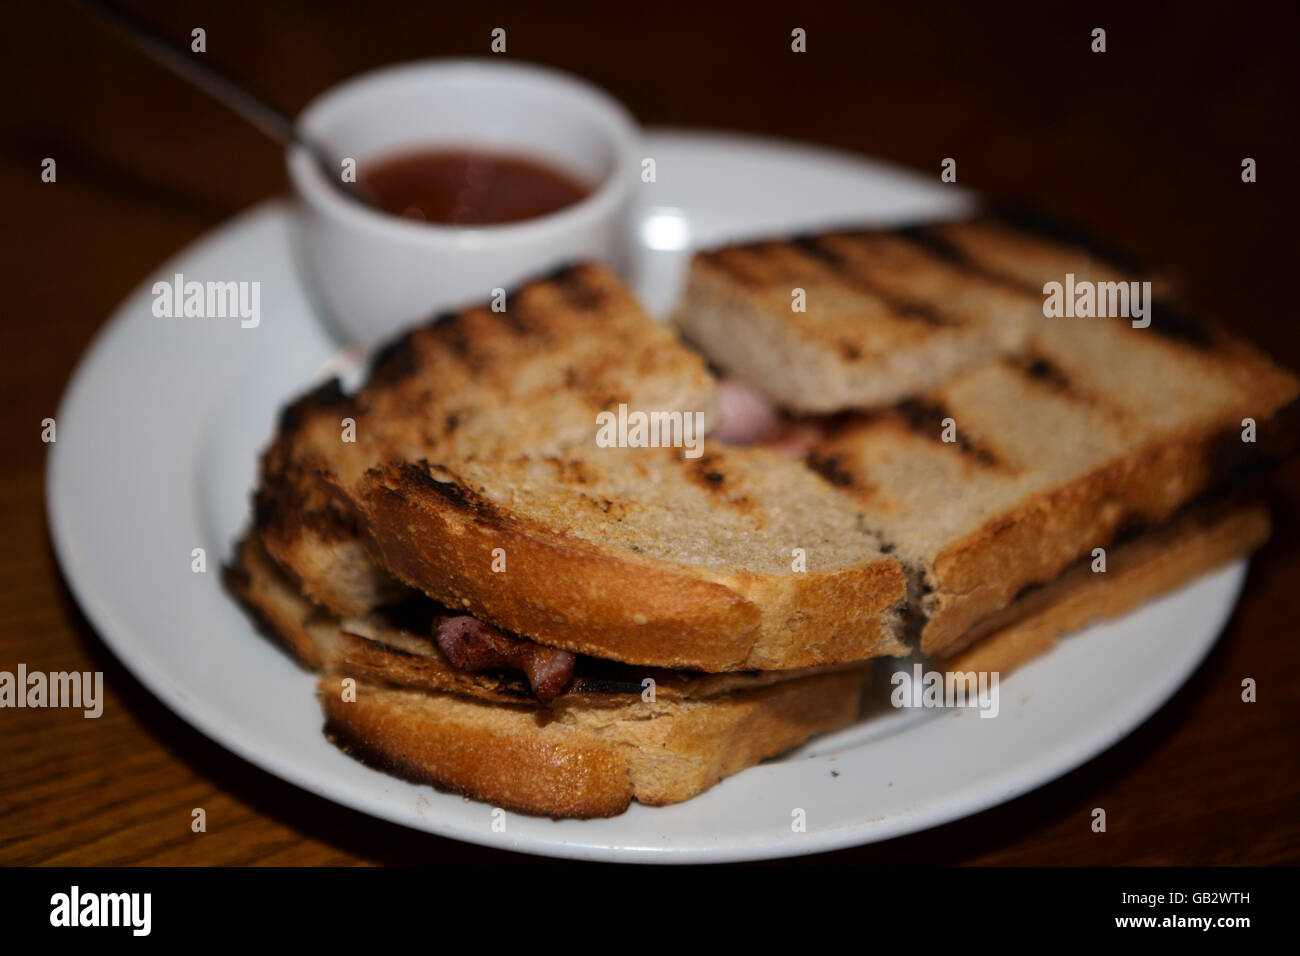 Eine Speck Sandwich, mit geröstetem Brot, serviert in London, England. Speck Sandwiches gelten seit langem als ein traditionelles Stockfoto